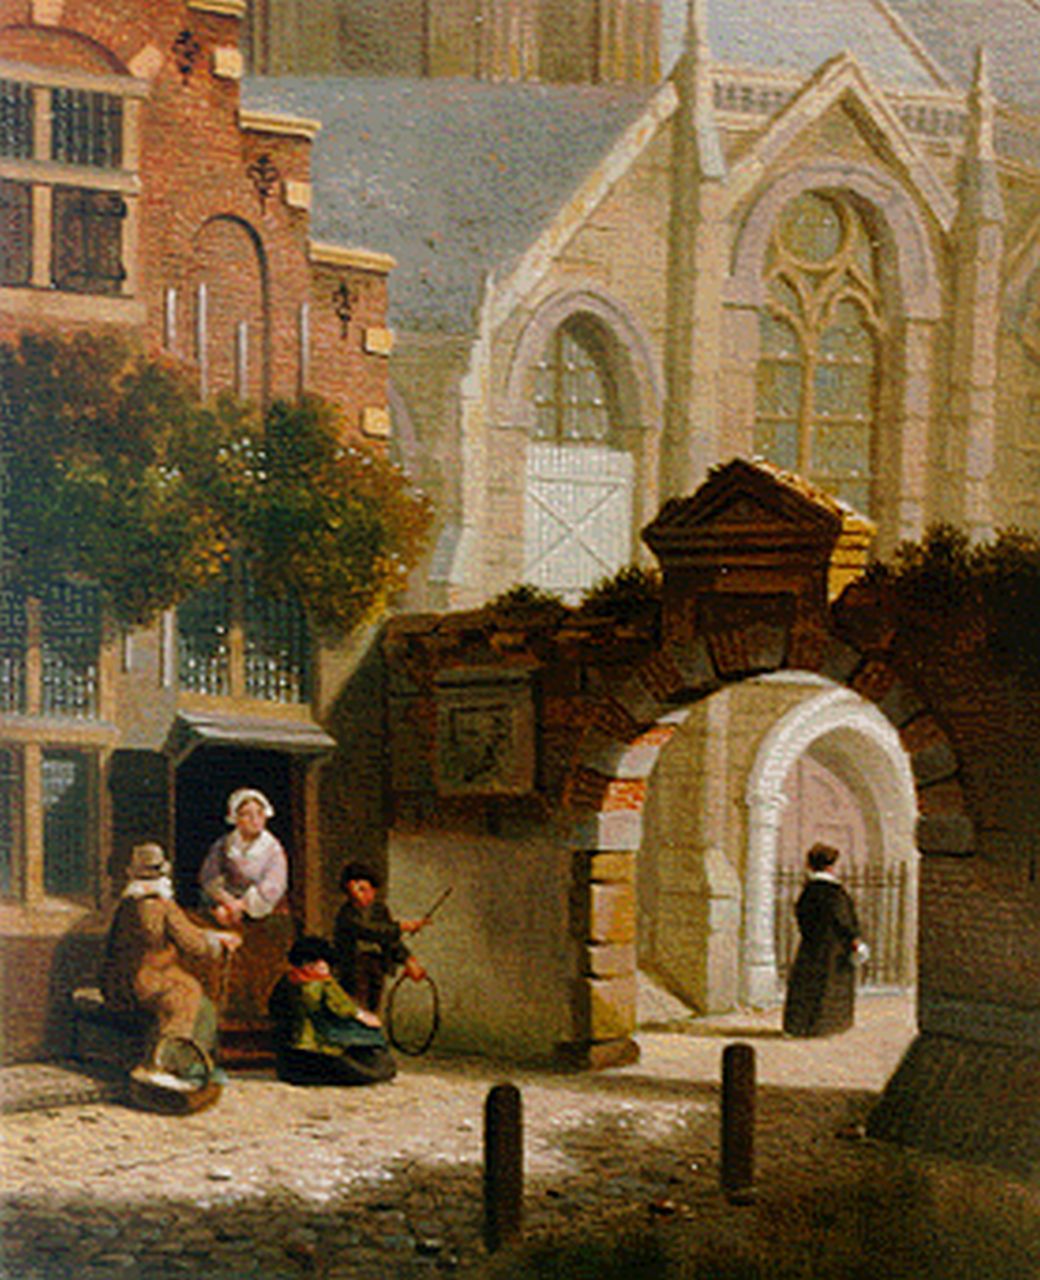 Verheijen J.H.  | Jan Hendrik Verheijen, Figures in a Dutch town, oil on panel 15.7 x 12.8 cm, signed l.r.